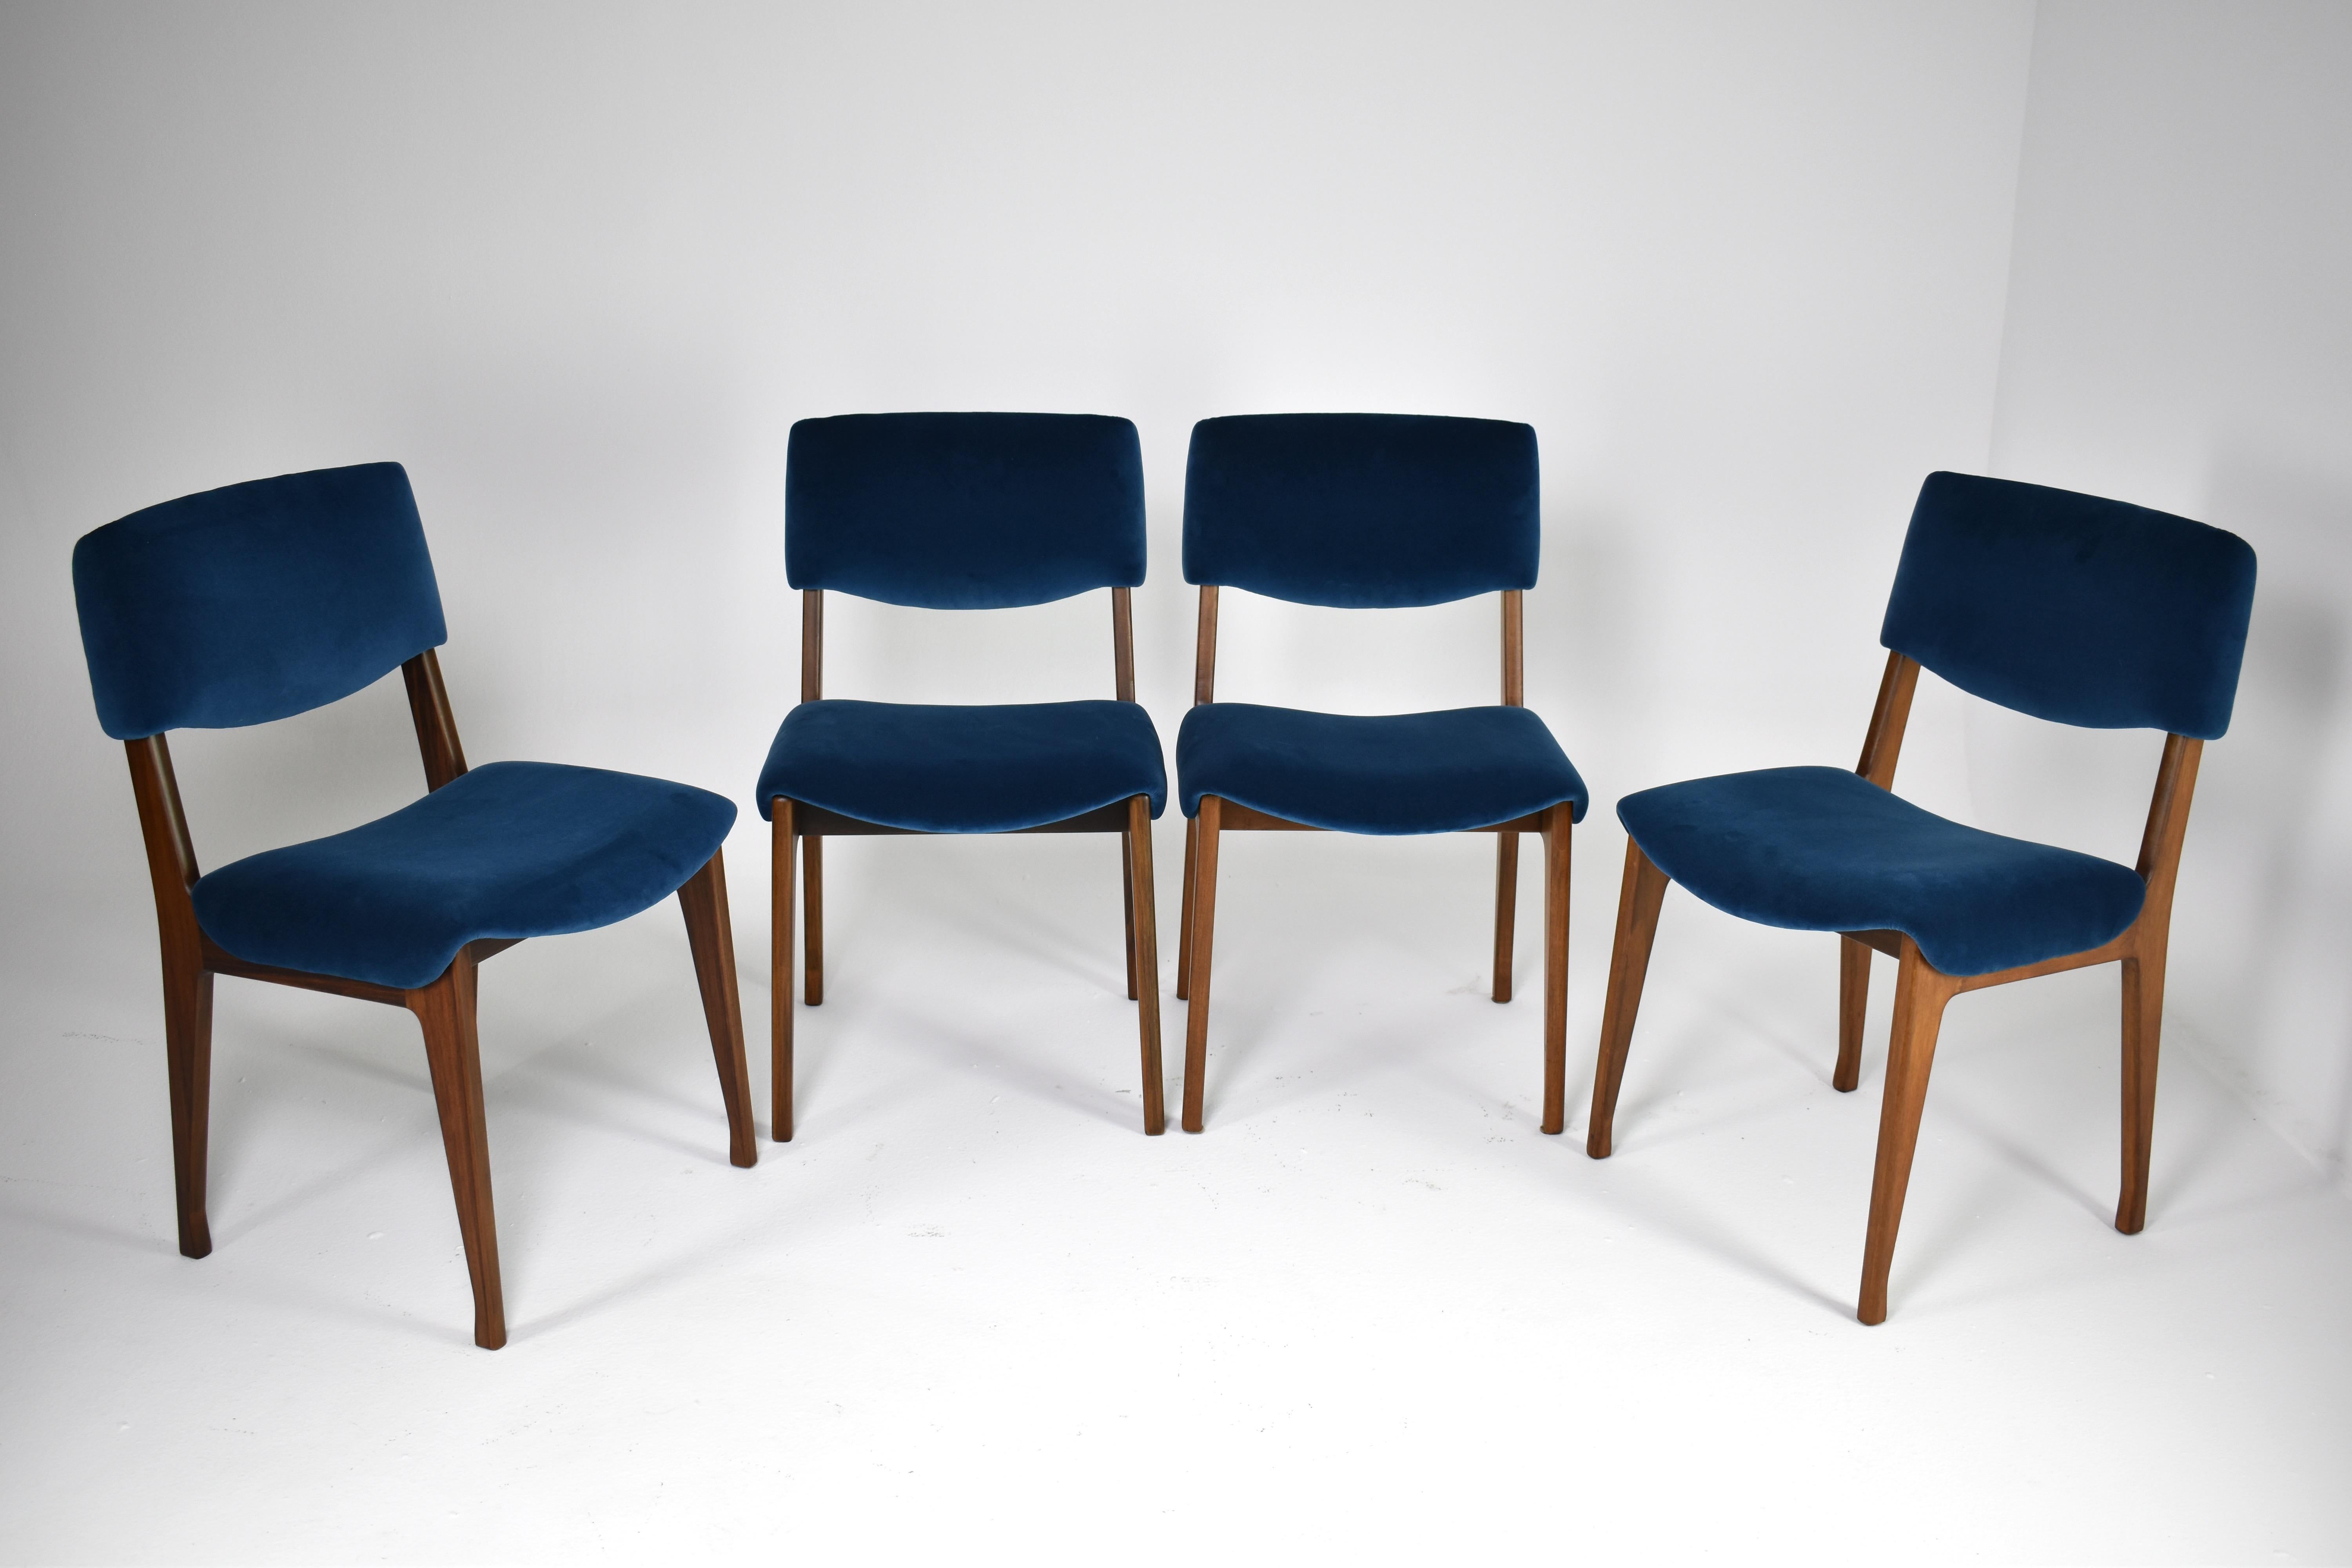 Ensemble de quatre chaises de salle à manger italiennes restaurées par Ico Parisi pour MIM, datant des années 1950-60. Fabriqué en bois et recouvert de velours bleu foncé. Ces belles pièces de collection sont mises en valeur par leur assise et leur